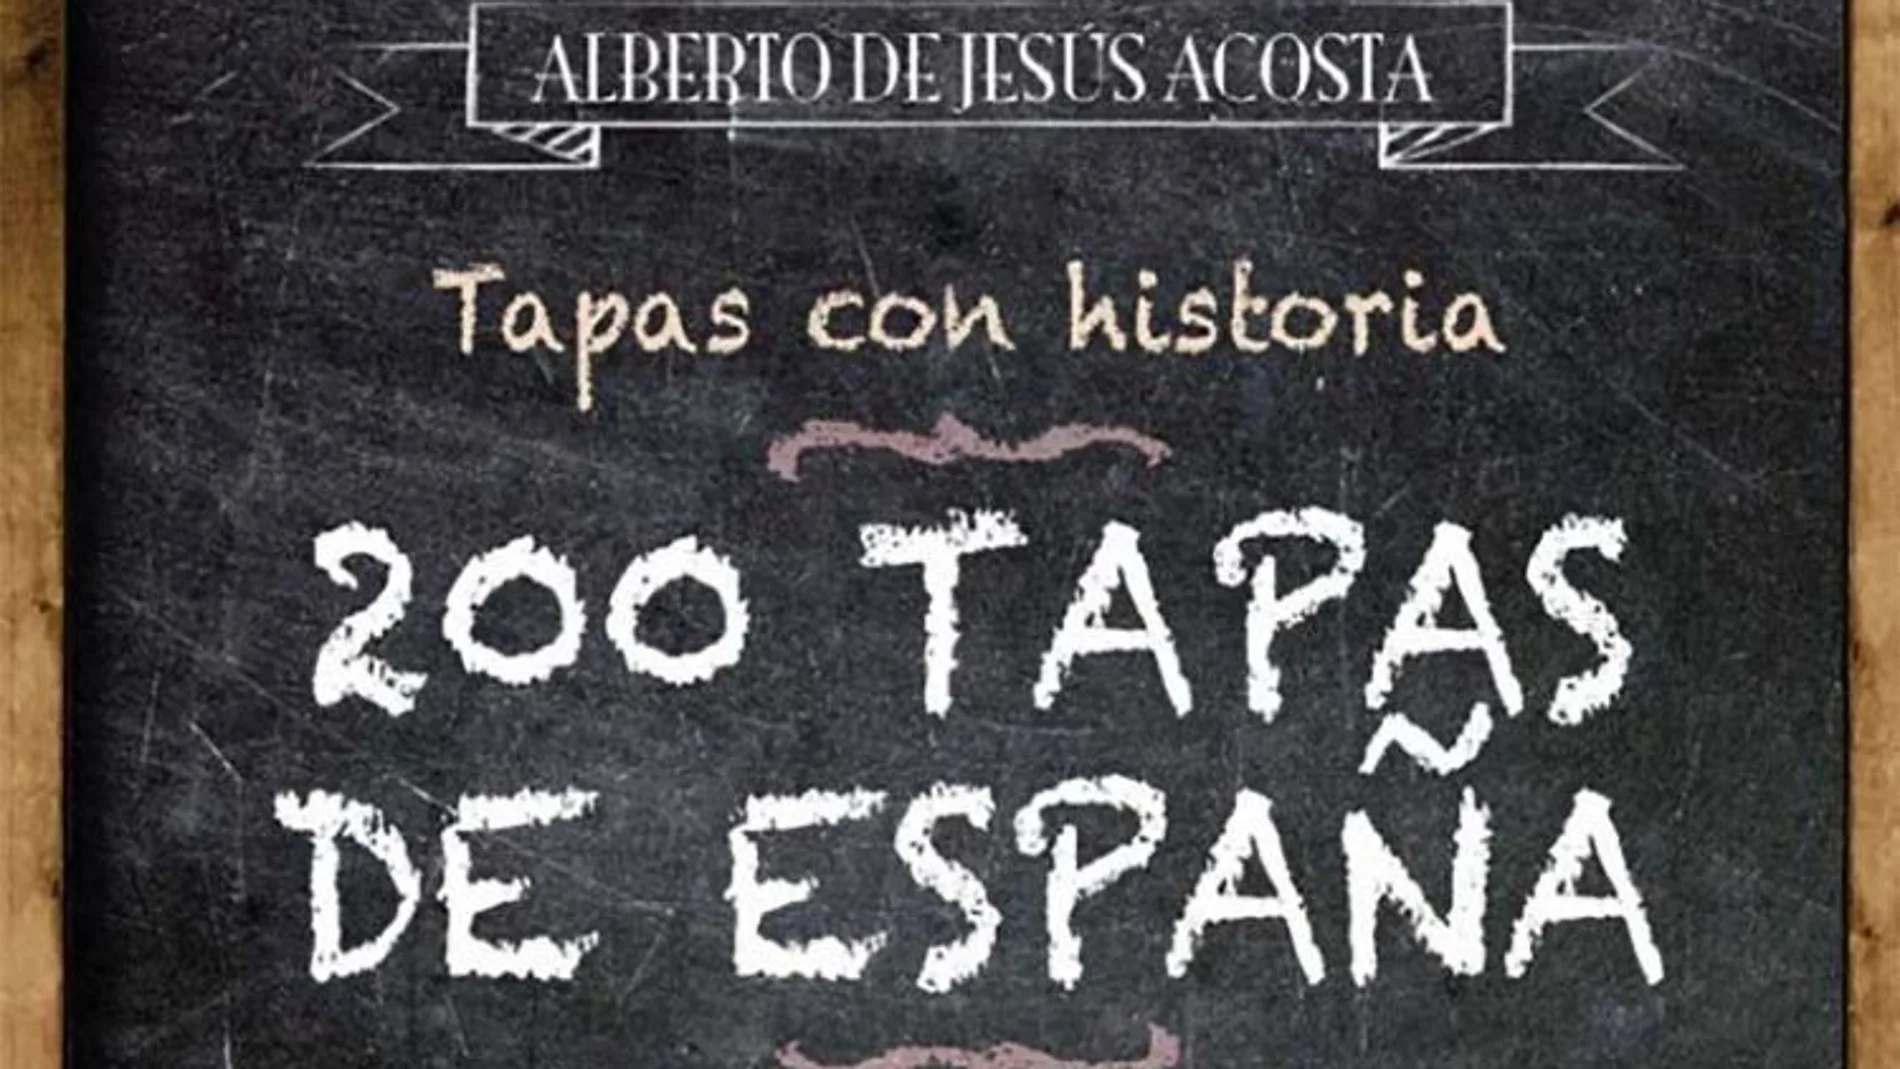 El viaje gastronómico que recoge Alberto de Jesús Acosta en "200 tapas de España"es producto de toda una vida como viajante y de su afición a la cocina.